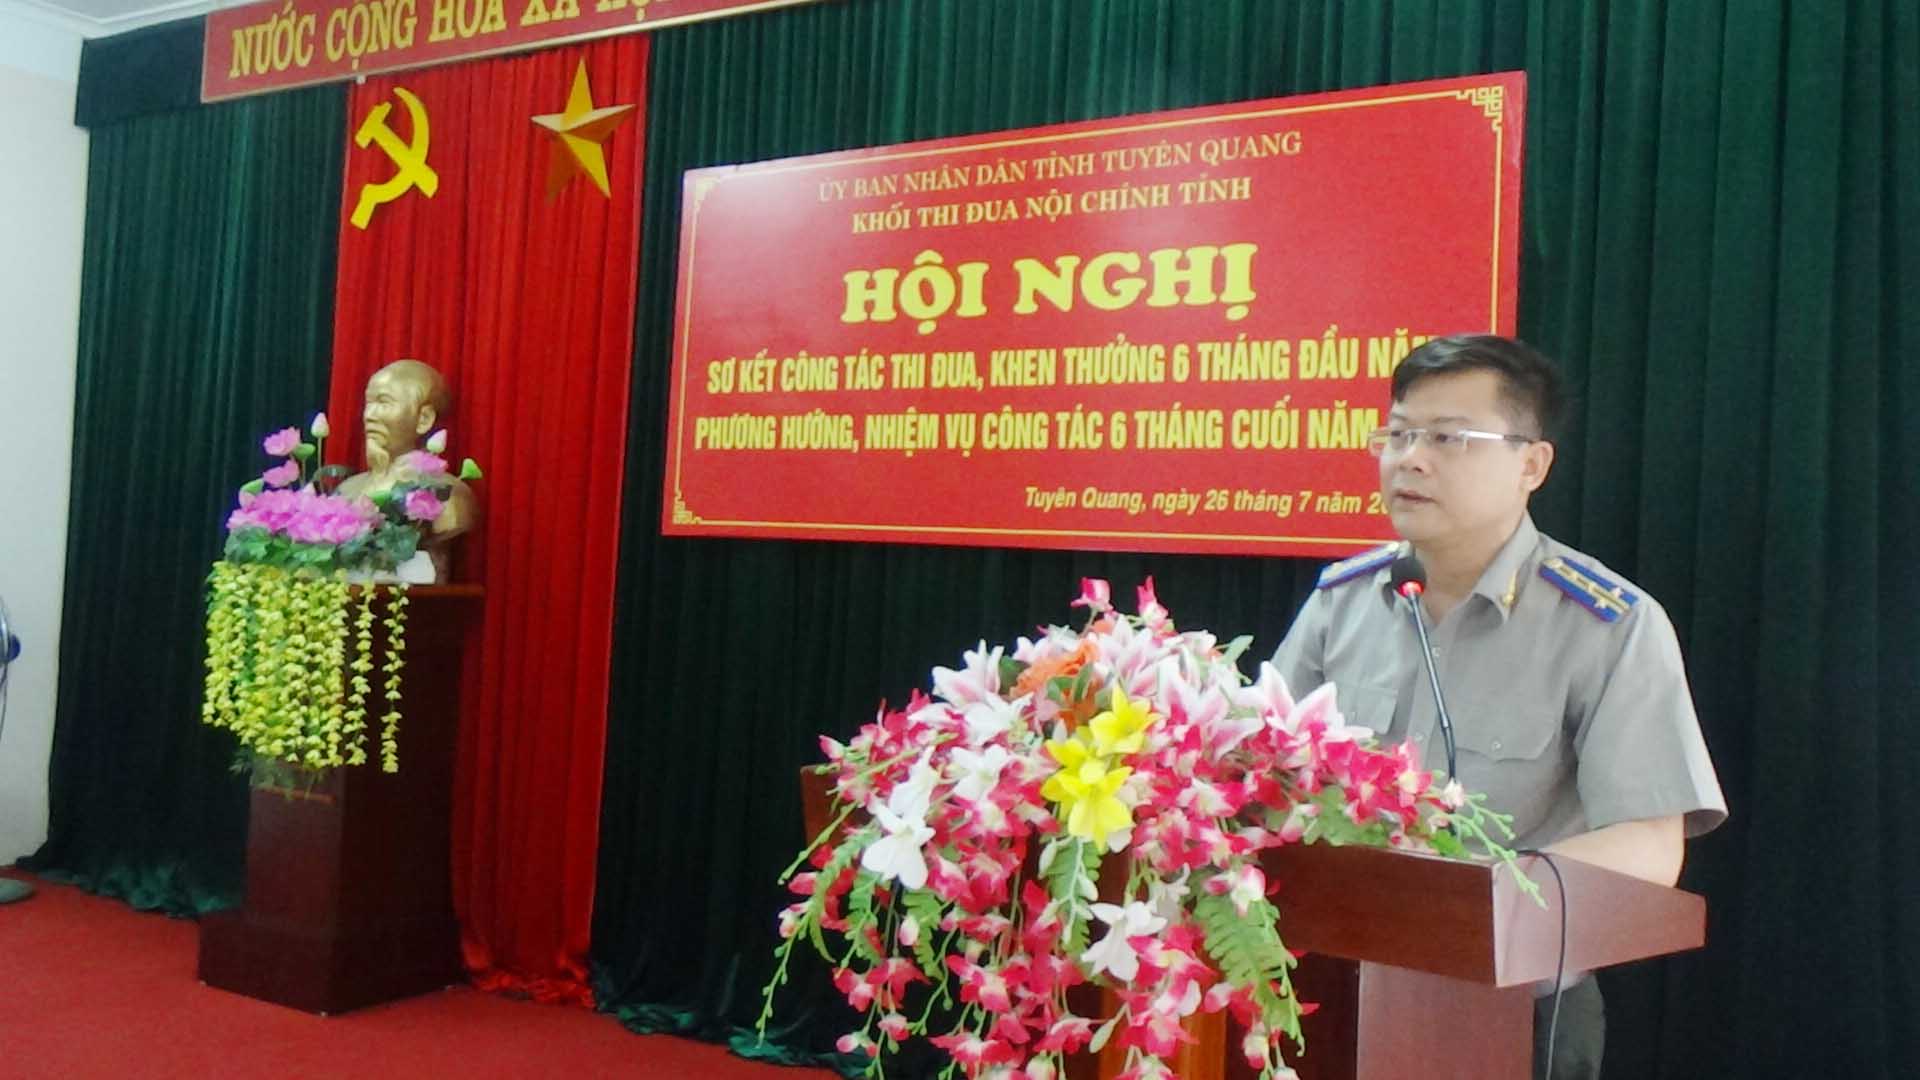 Cục Thi hành án dân sự tỉnh Tuyên Quang nhận nhiệm vụ Thường trực Khối thi đua nội chính tỉnh năm 2019